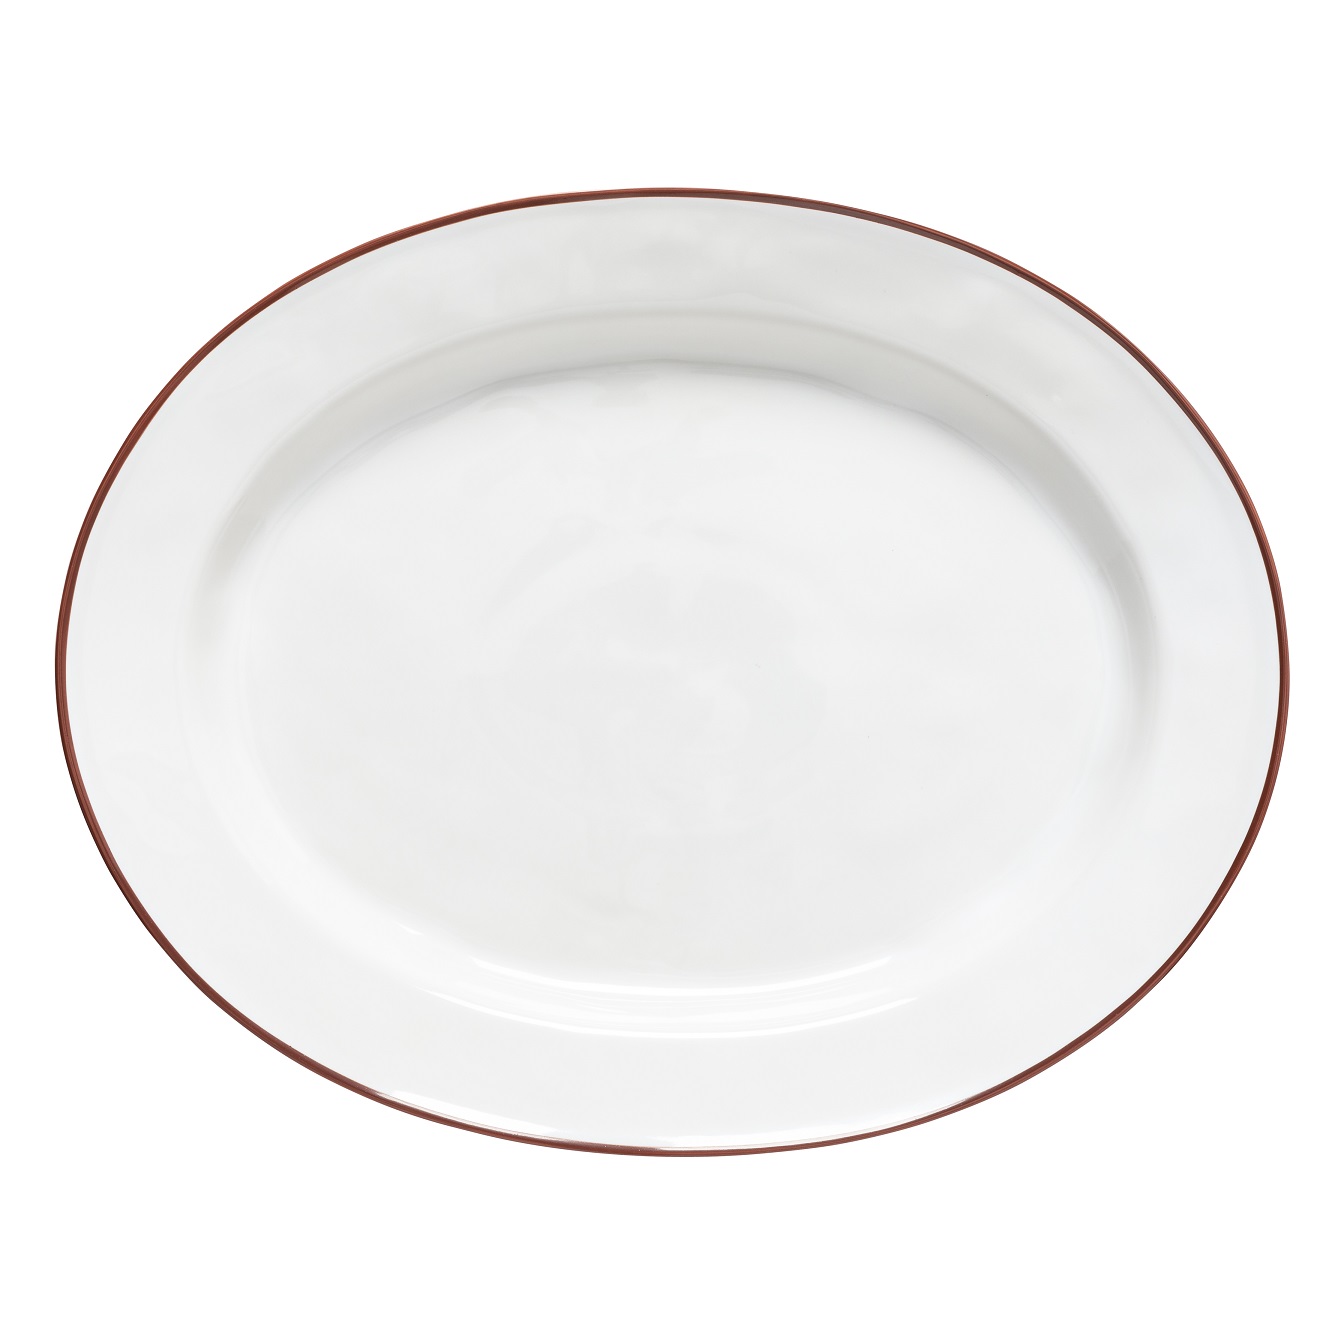 Beja White/red Oval Platter 40cm Gift